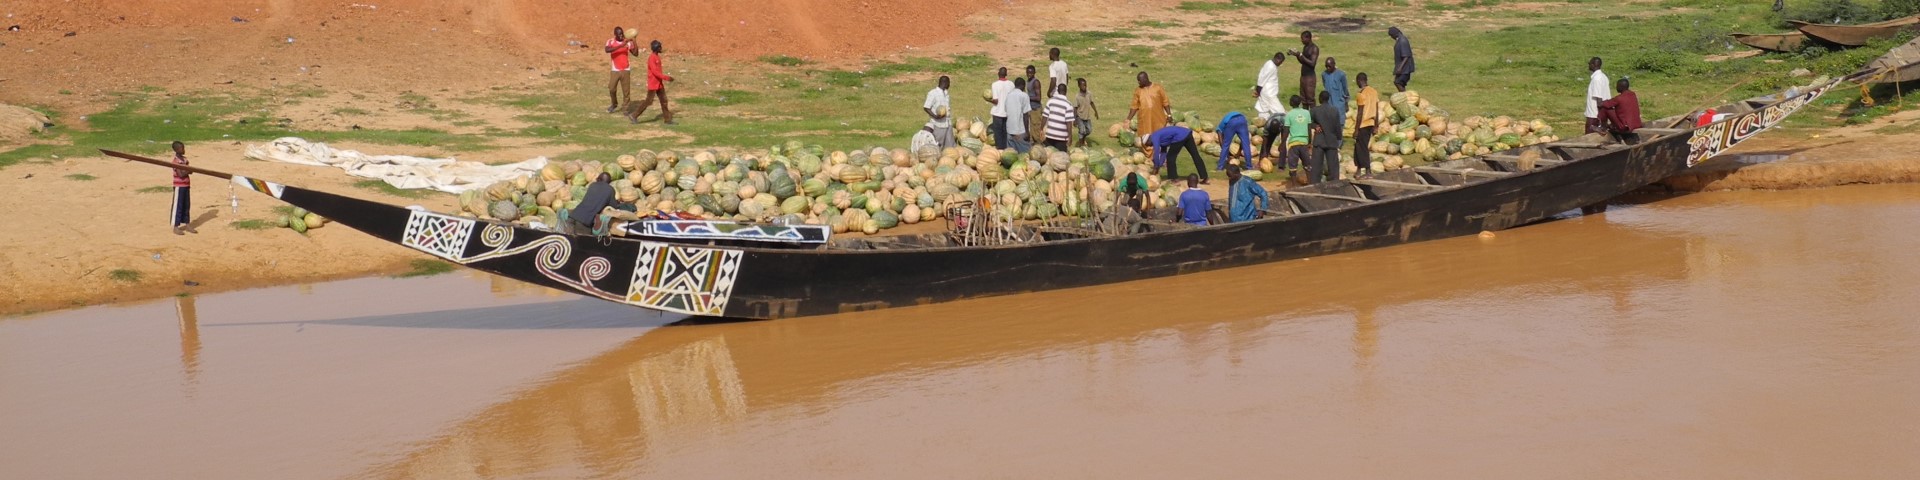 Déchargement des courges d'une pirogue au Niger.